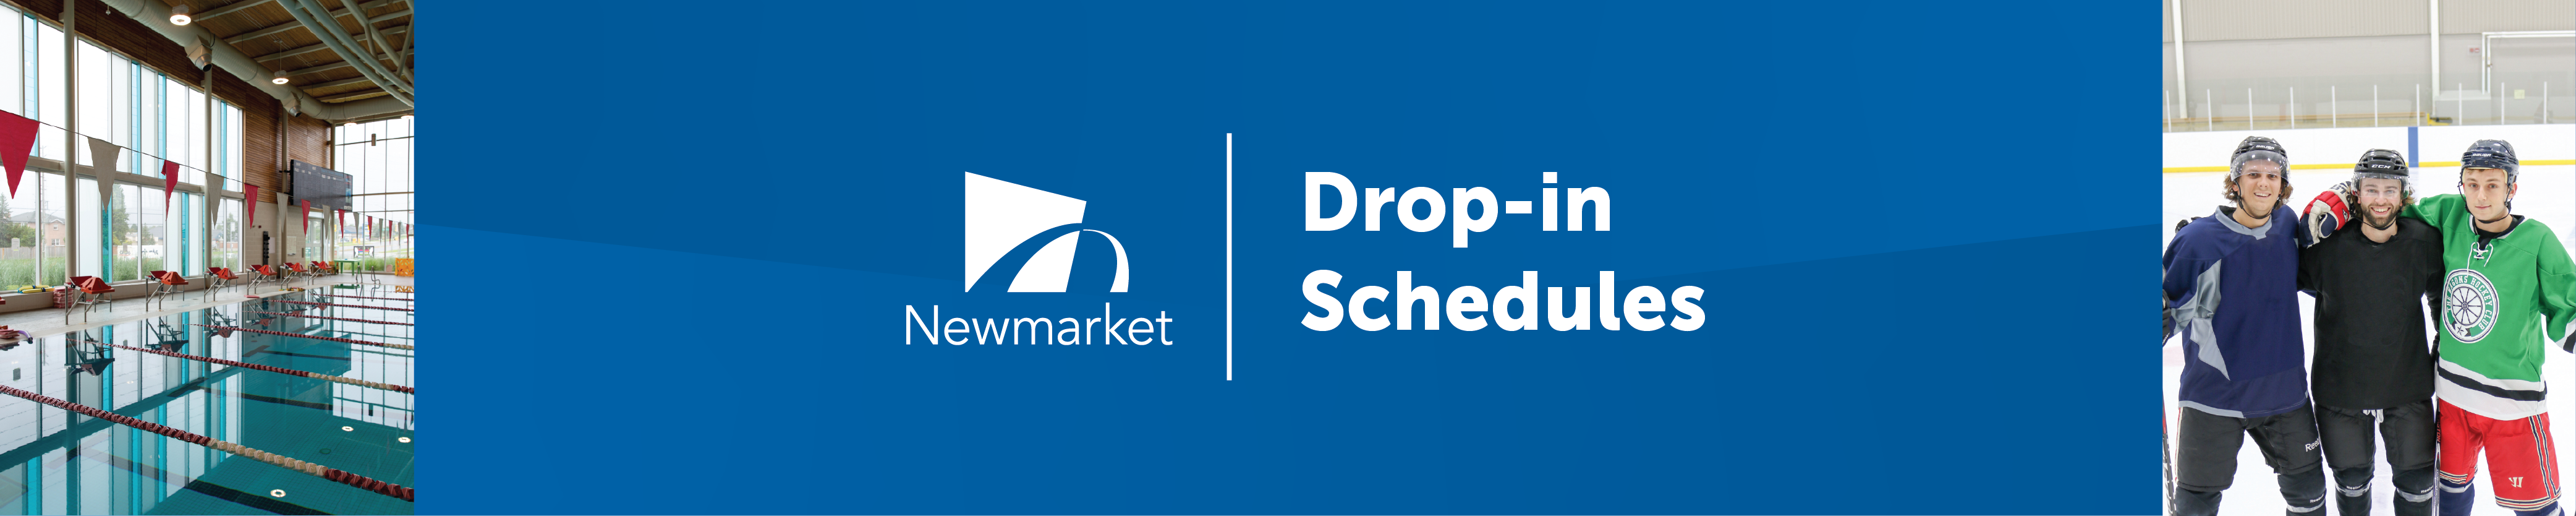 drop in schedule banner